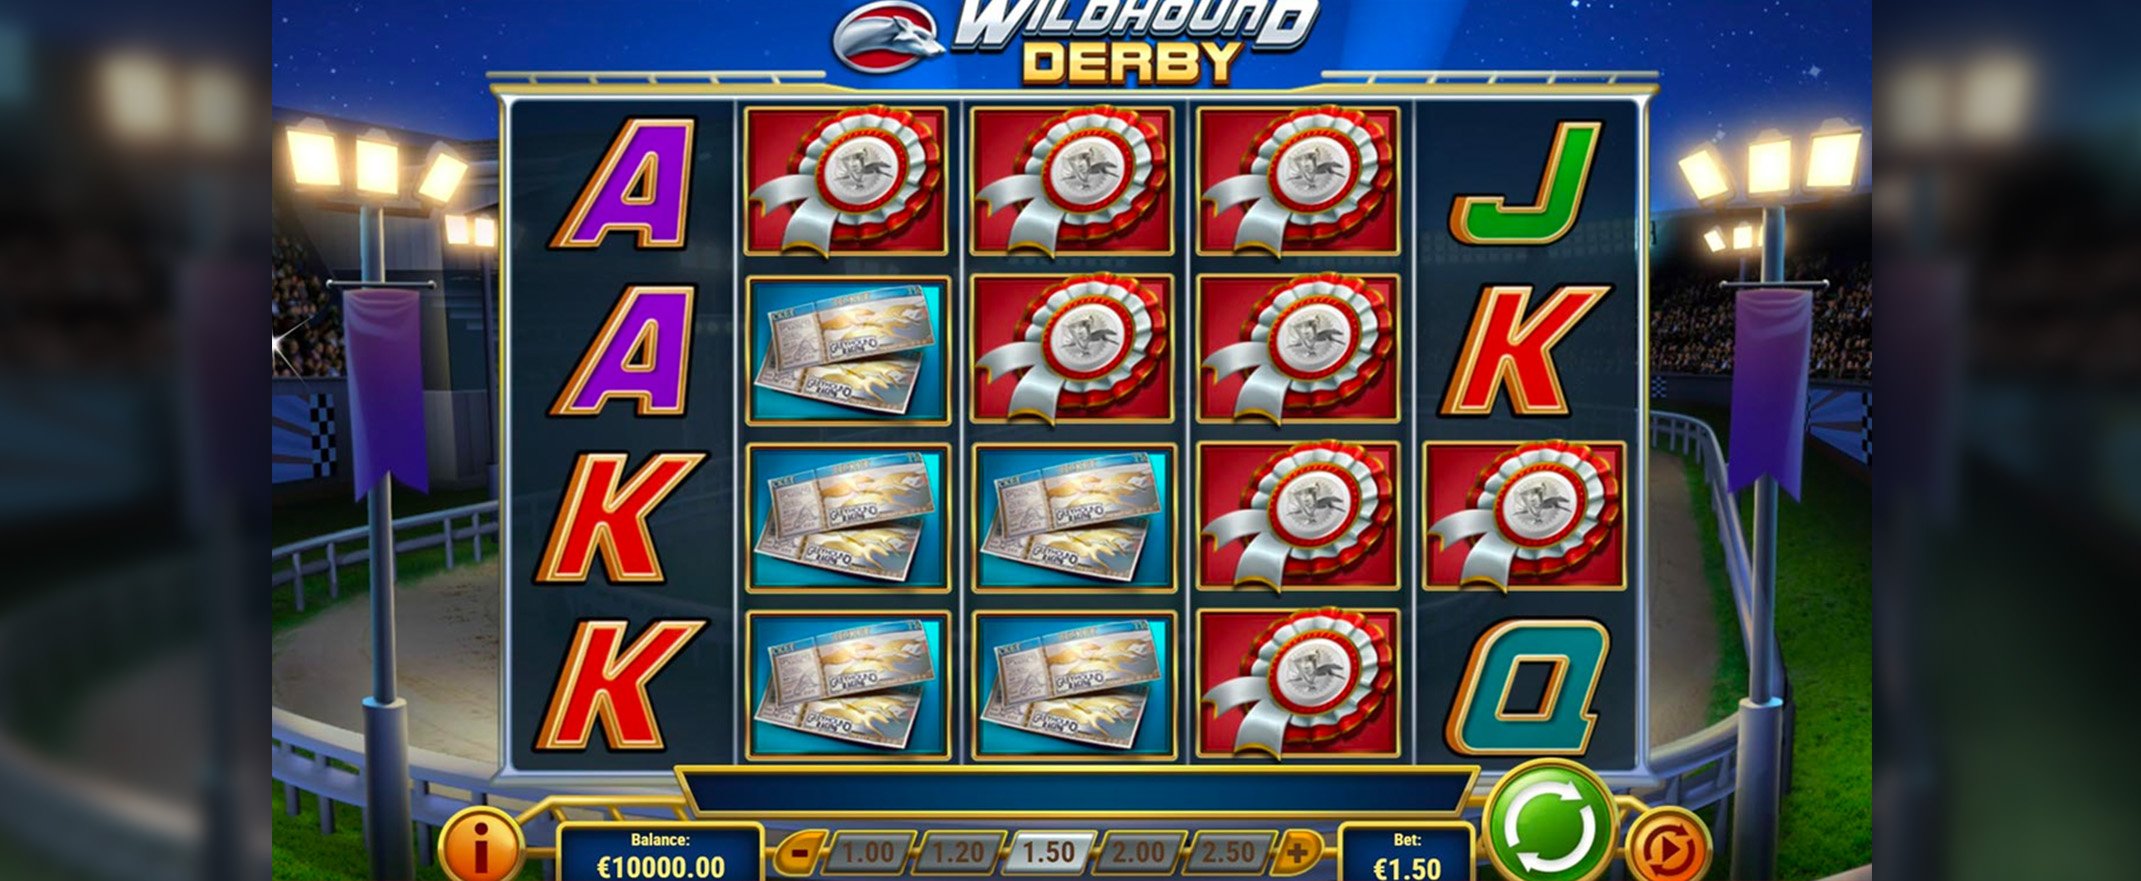 Wildhound Derby Spielautomat spielen 